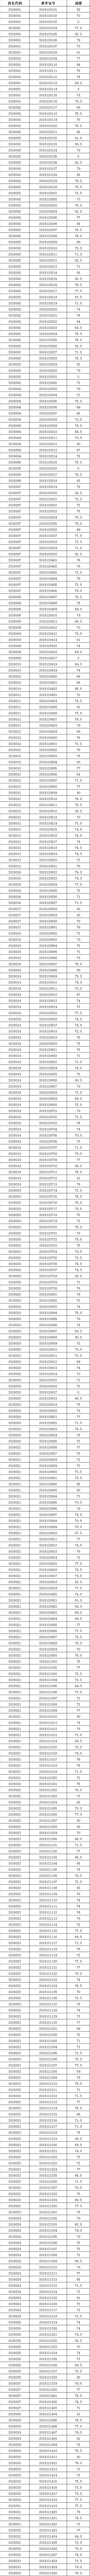 2015年滁州市市直机关和参照公务员法管理单位公开遴选公务员（工作人员）笔试成绩.png